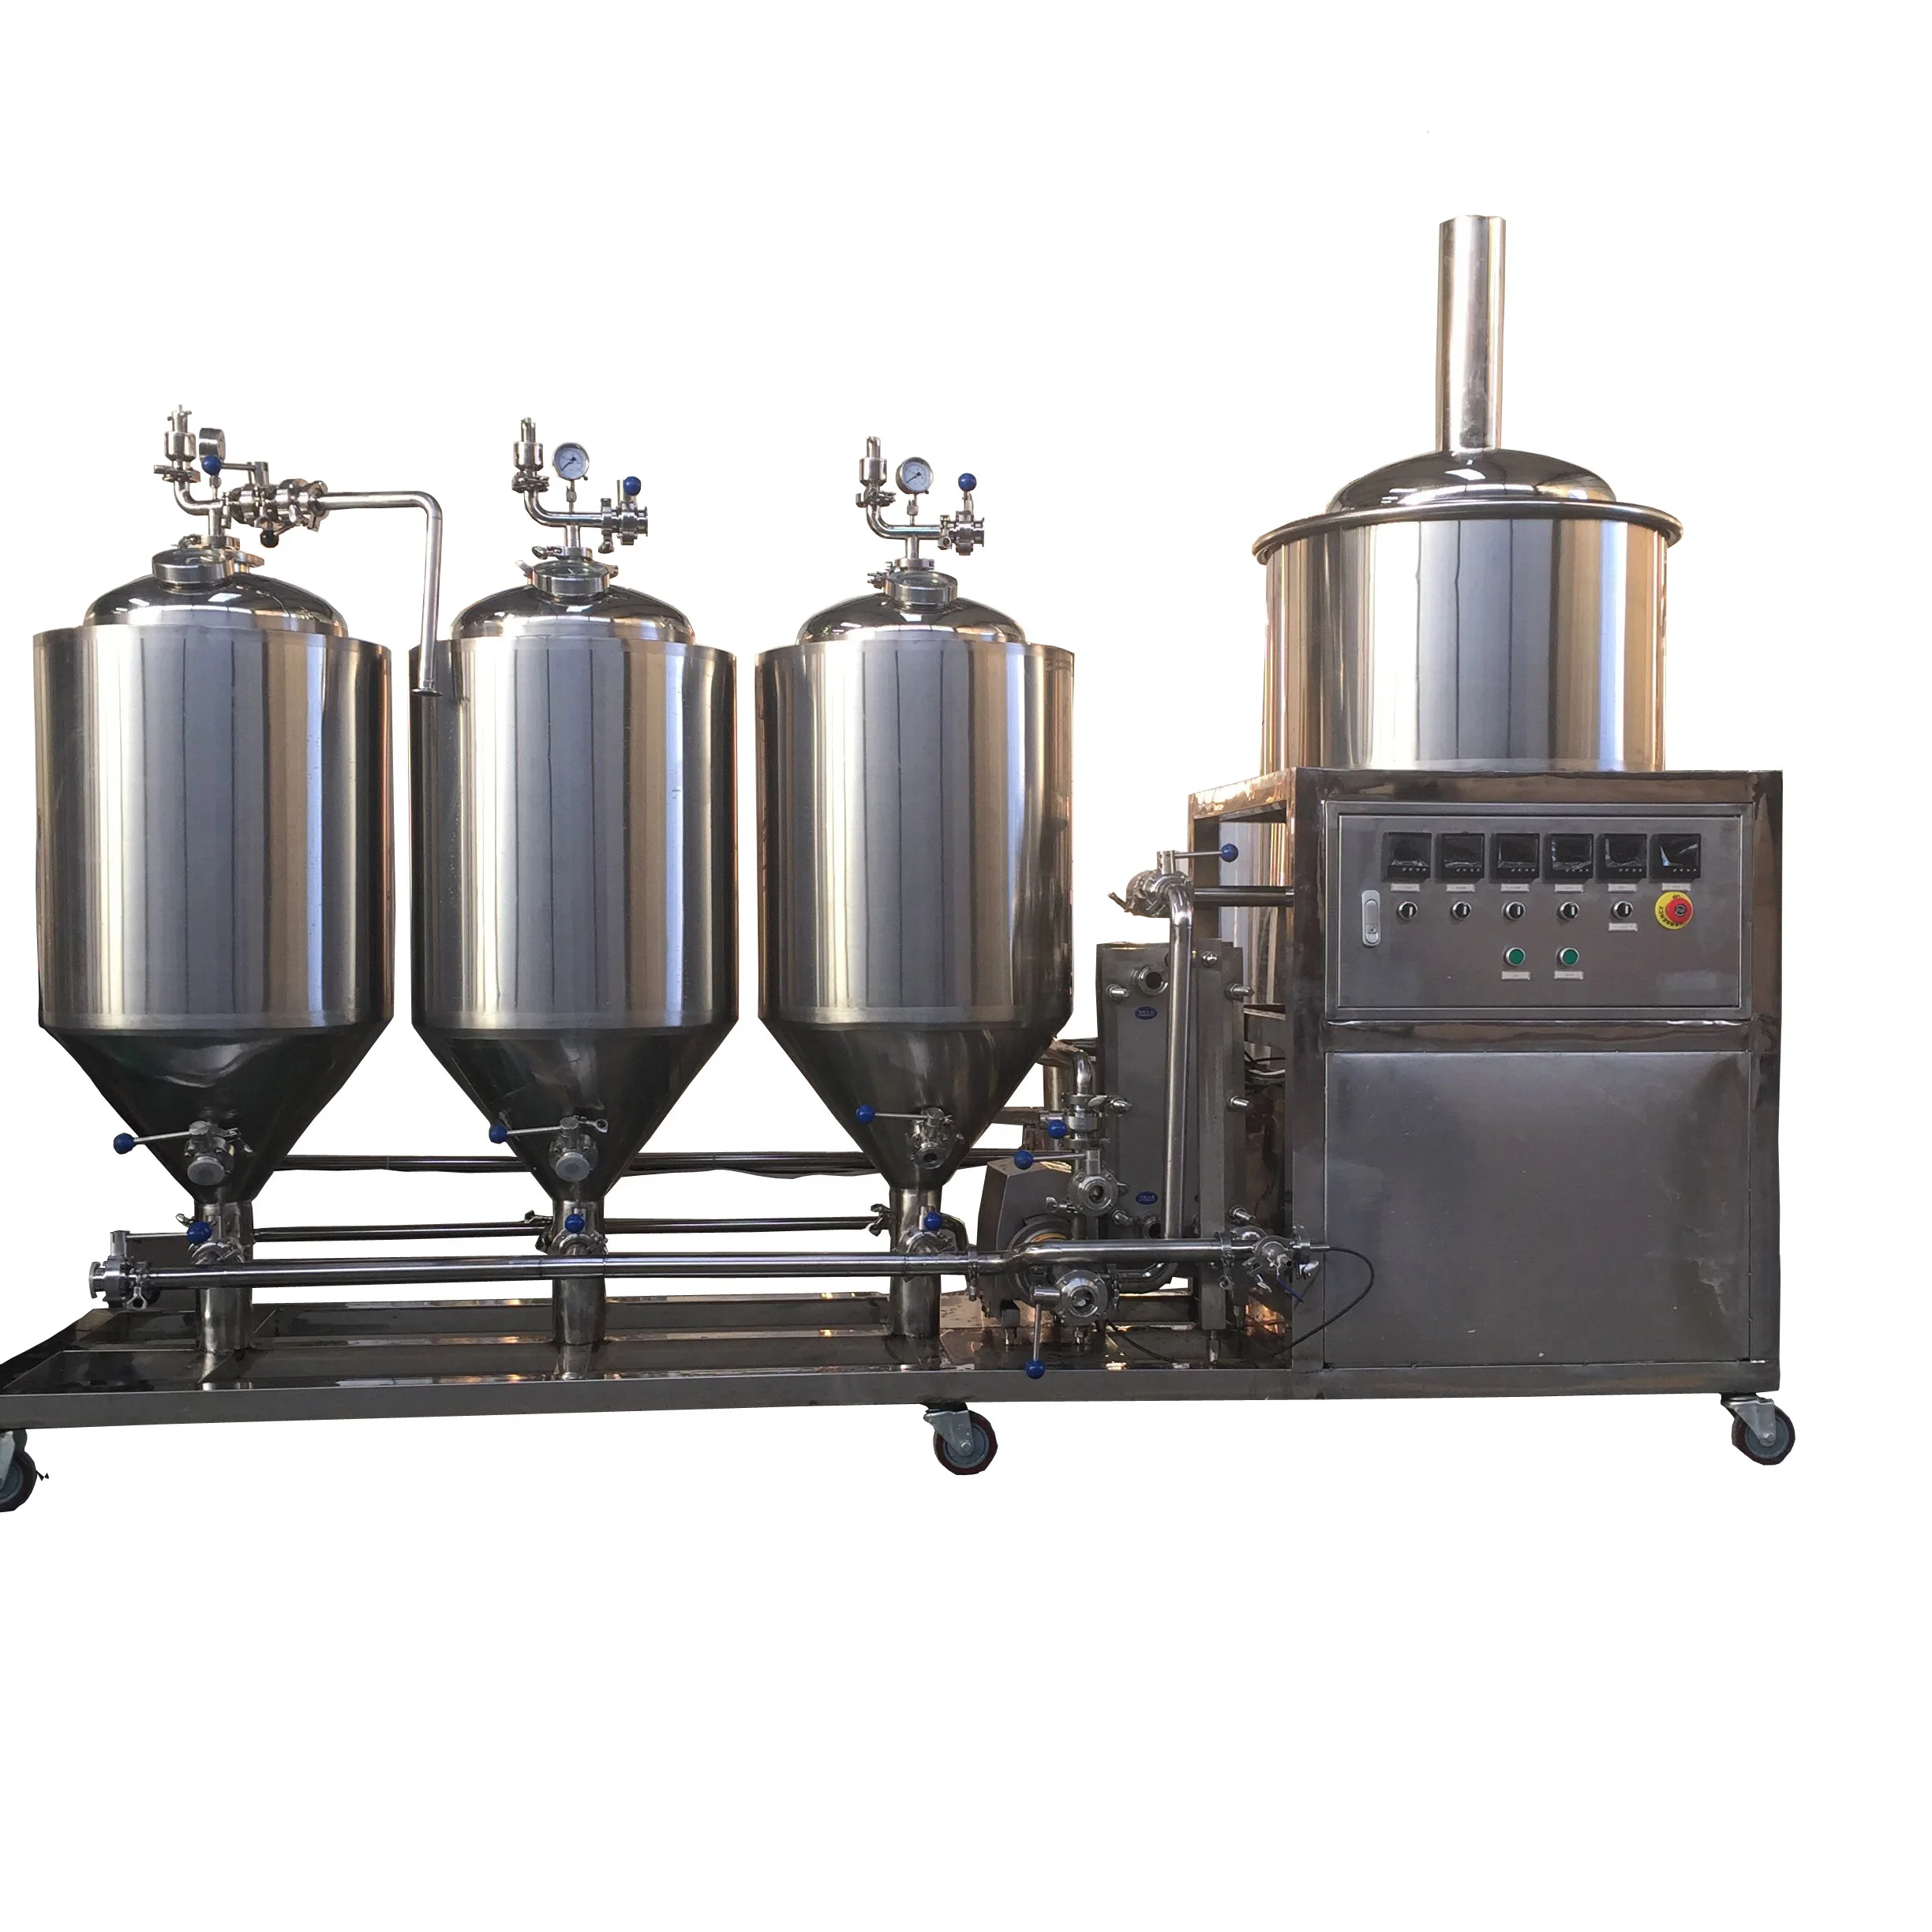 所有行业  机械设备  食品饮料机械  饮料酒水加工机械  发酵设备  1